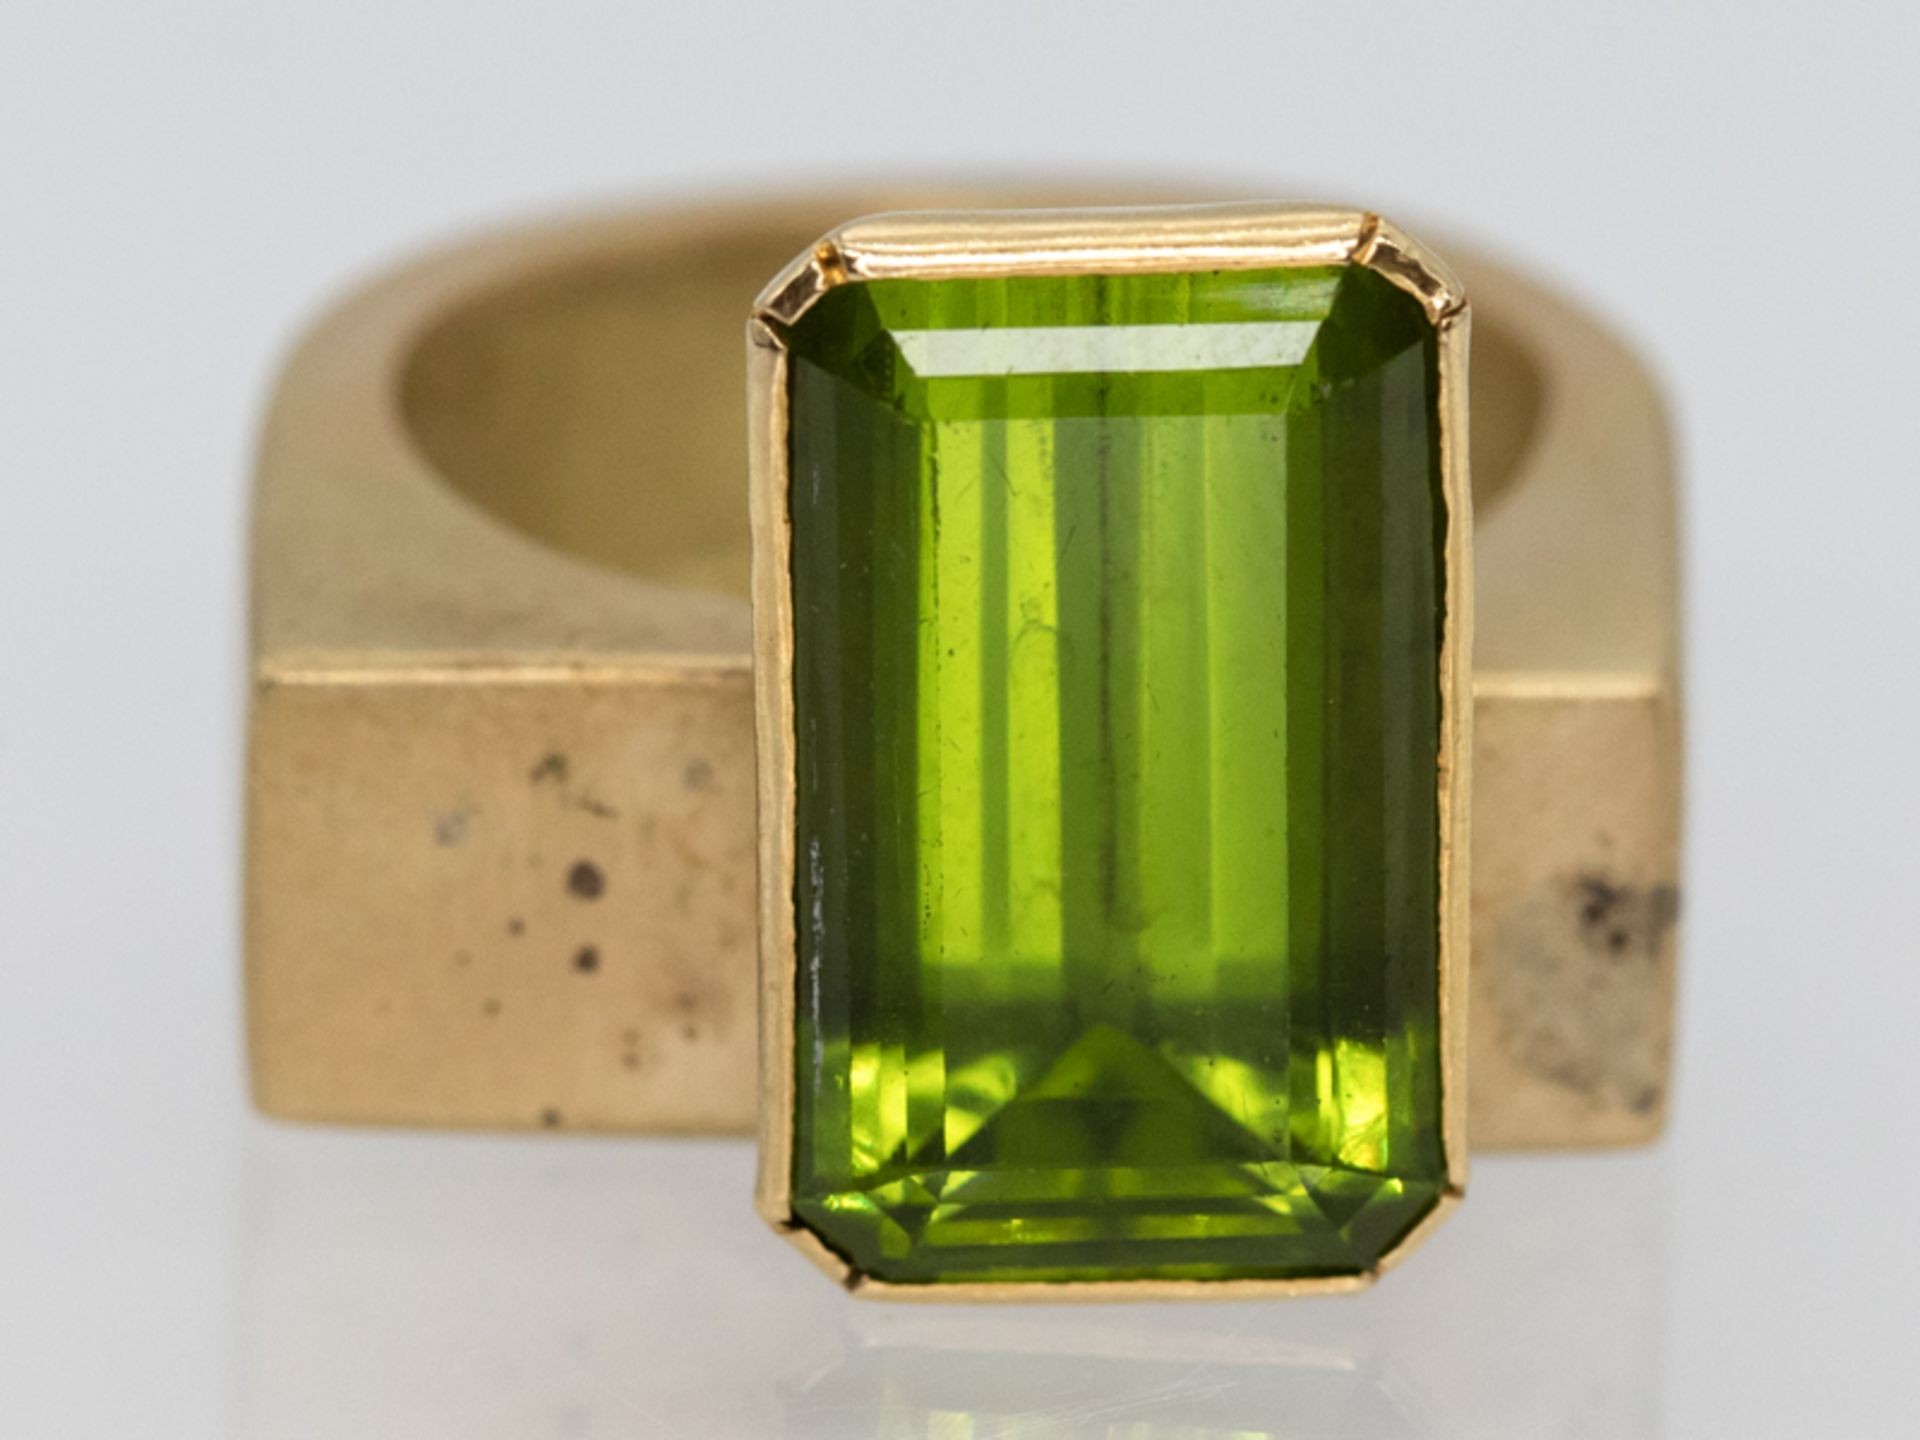 Moderner Ring mit Peridot ca. 13,52 ct, Goldschmiede Lenk, Salzburg, Österreich, 2003 750/-